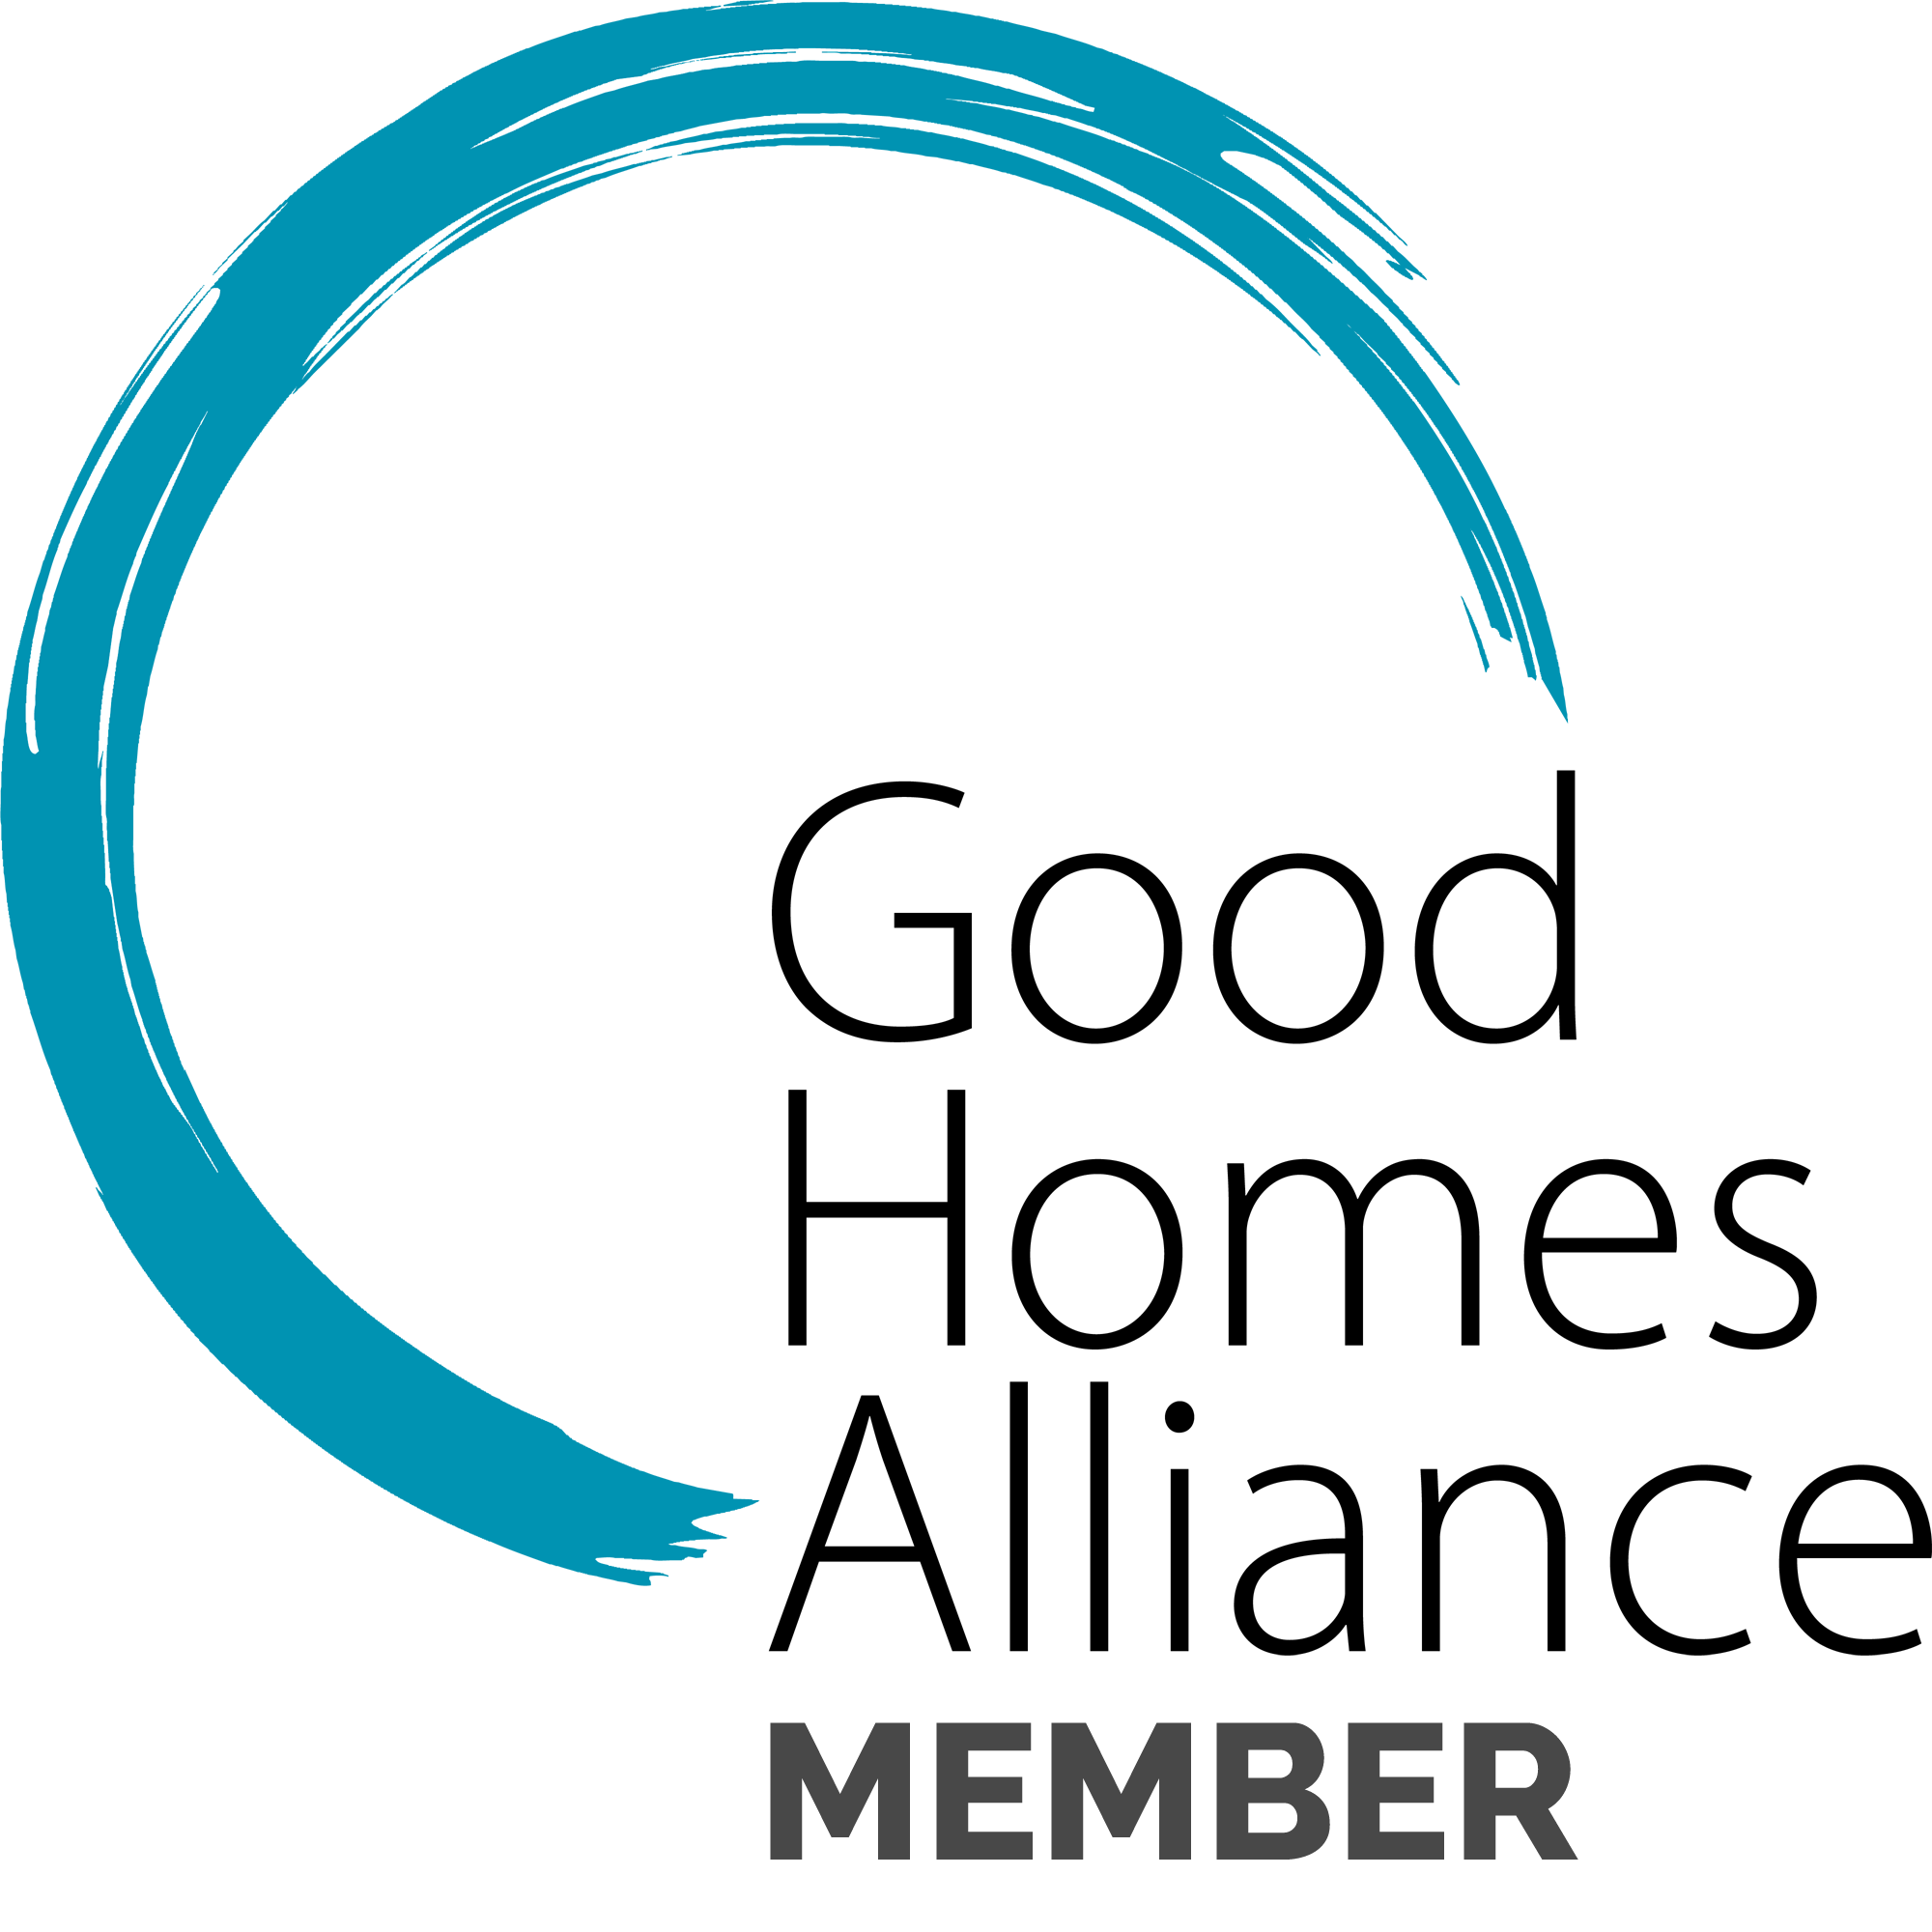 GHA Member logo.png